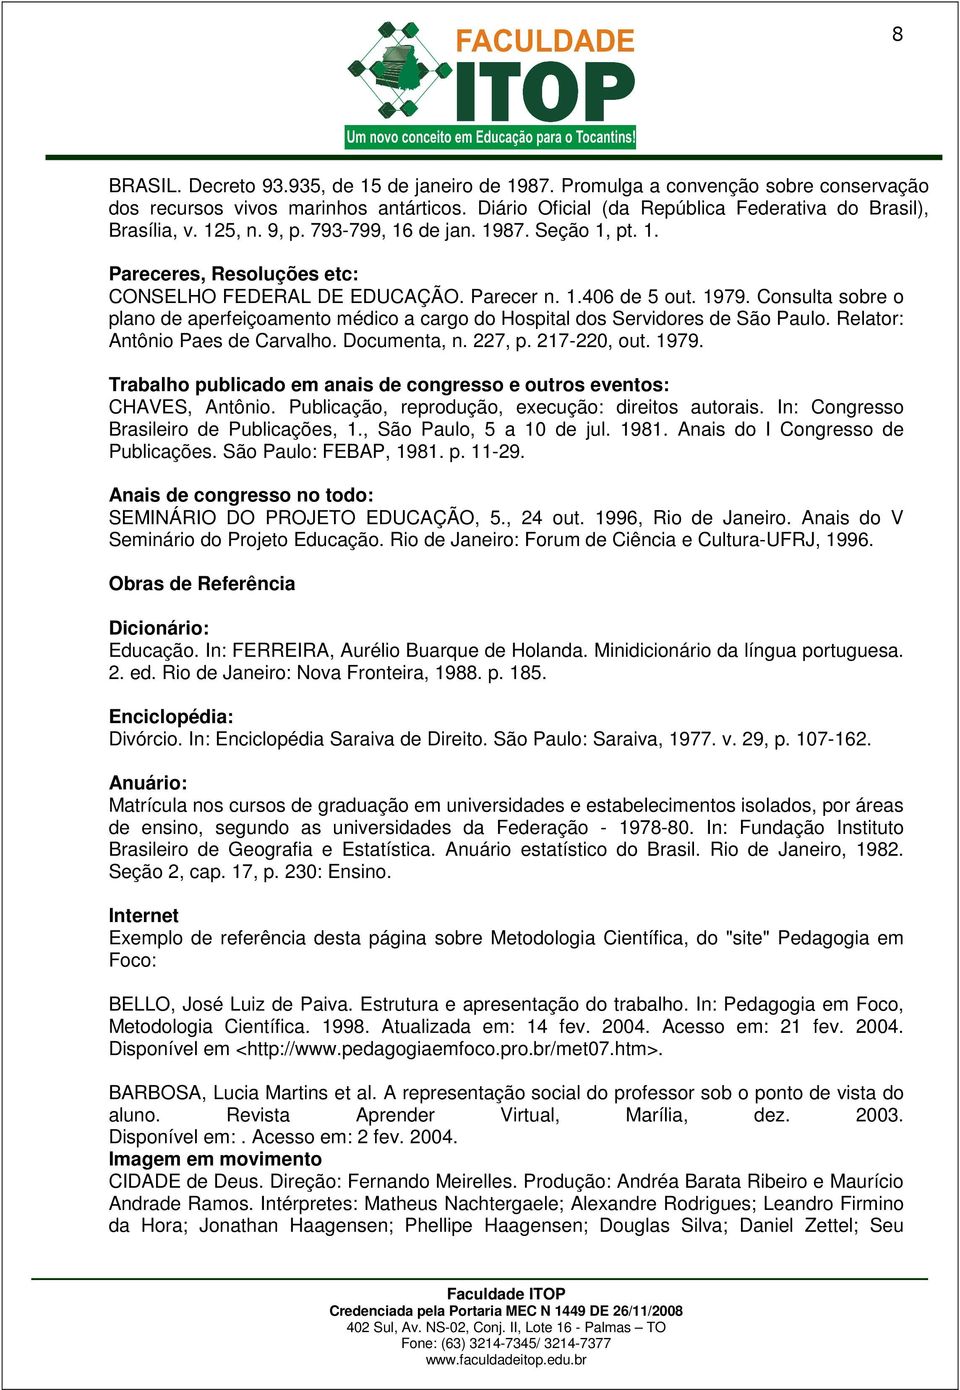 Consulta sobre o plano de aperfeiçoamento médico a cargo do Hospital dos Servidores de São Paulo. Relator: Antônio Paes de Carvalho. Documenta, n. 227, p. 217-220, out. 1979.